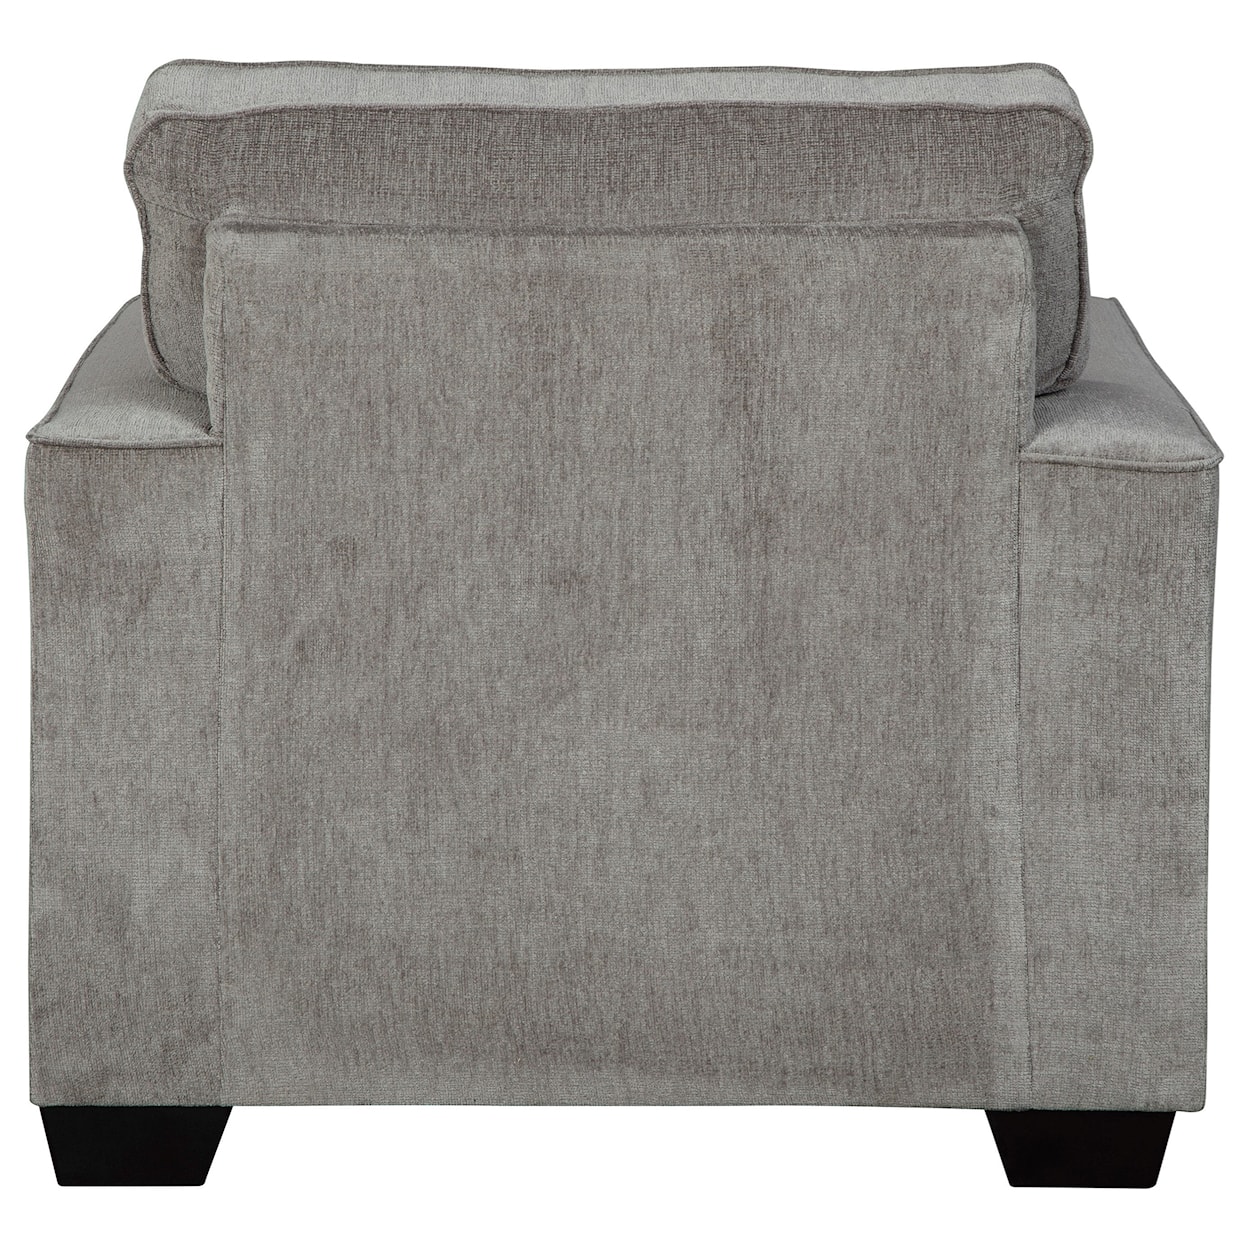 Ashley Furniture Signature Design Altari Chair